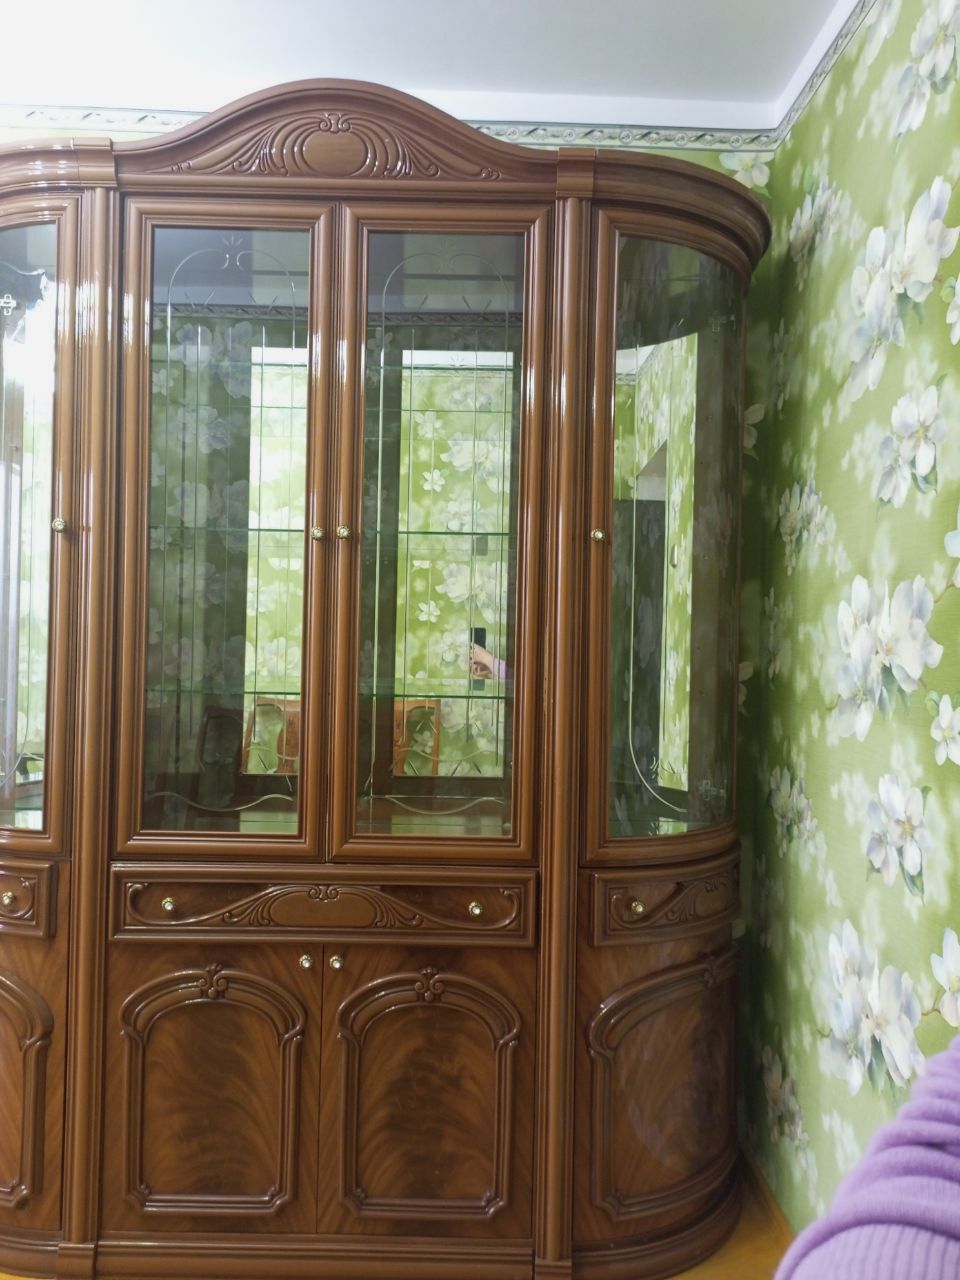 Продам мебель для зала сервант с зеркальным комодом.Италия.Новое